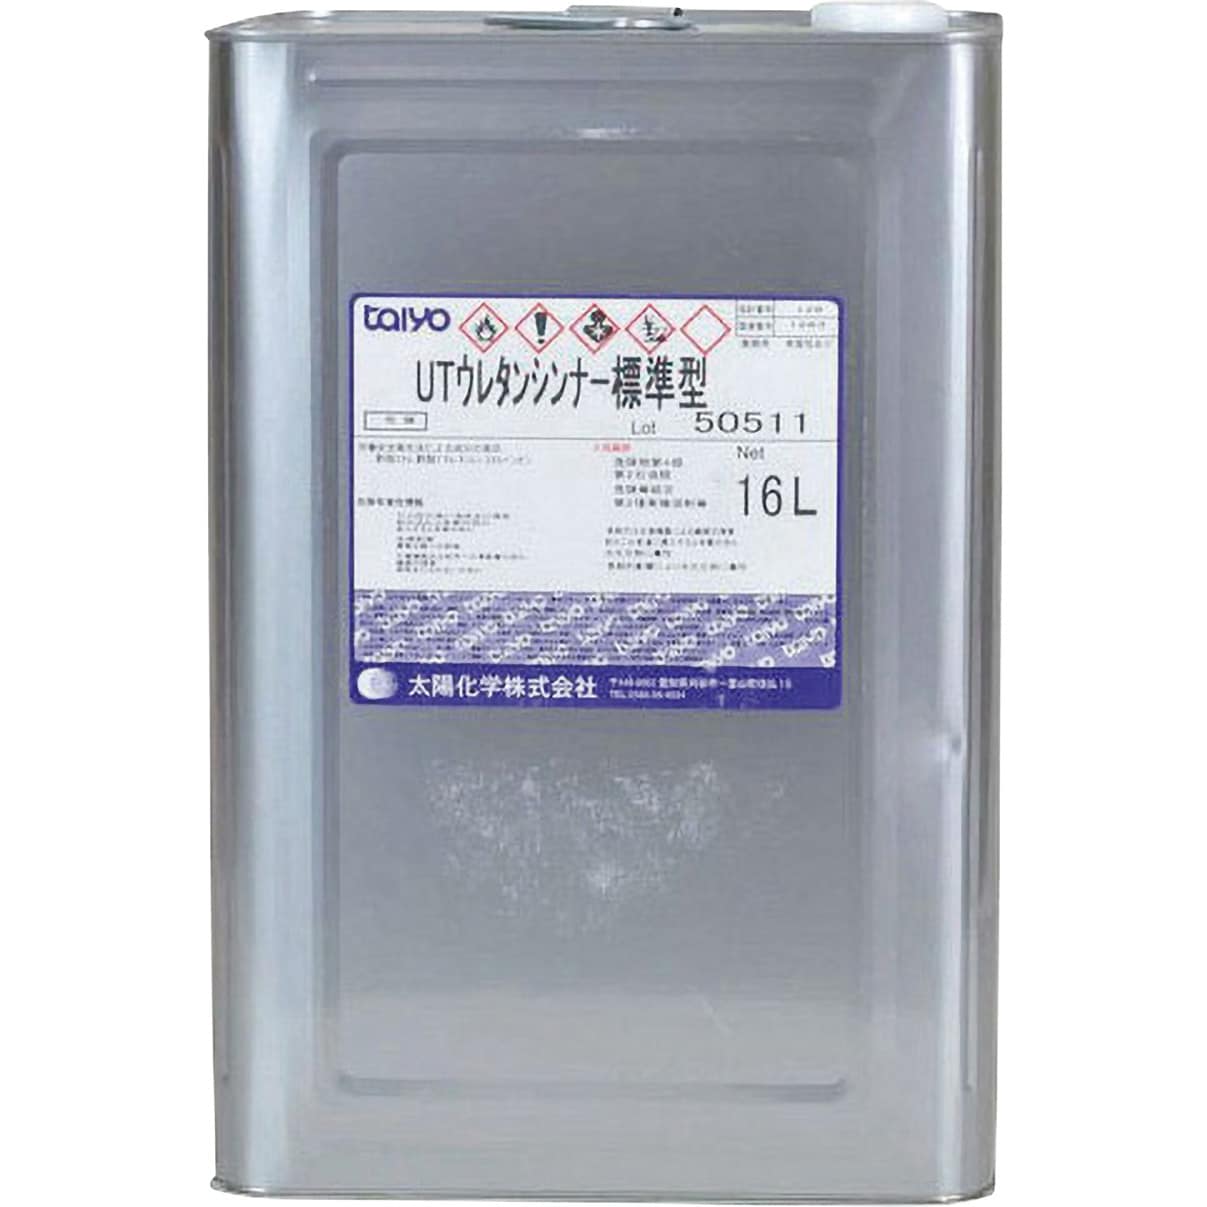 331-6024-03 太陽化学 UTウレタンシンナー 1缶(1L) 太陽化学 【通販モノタロウ】